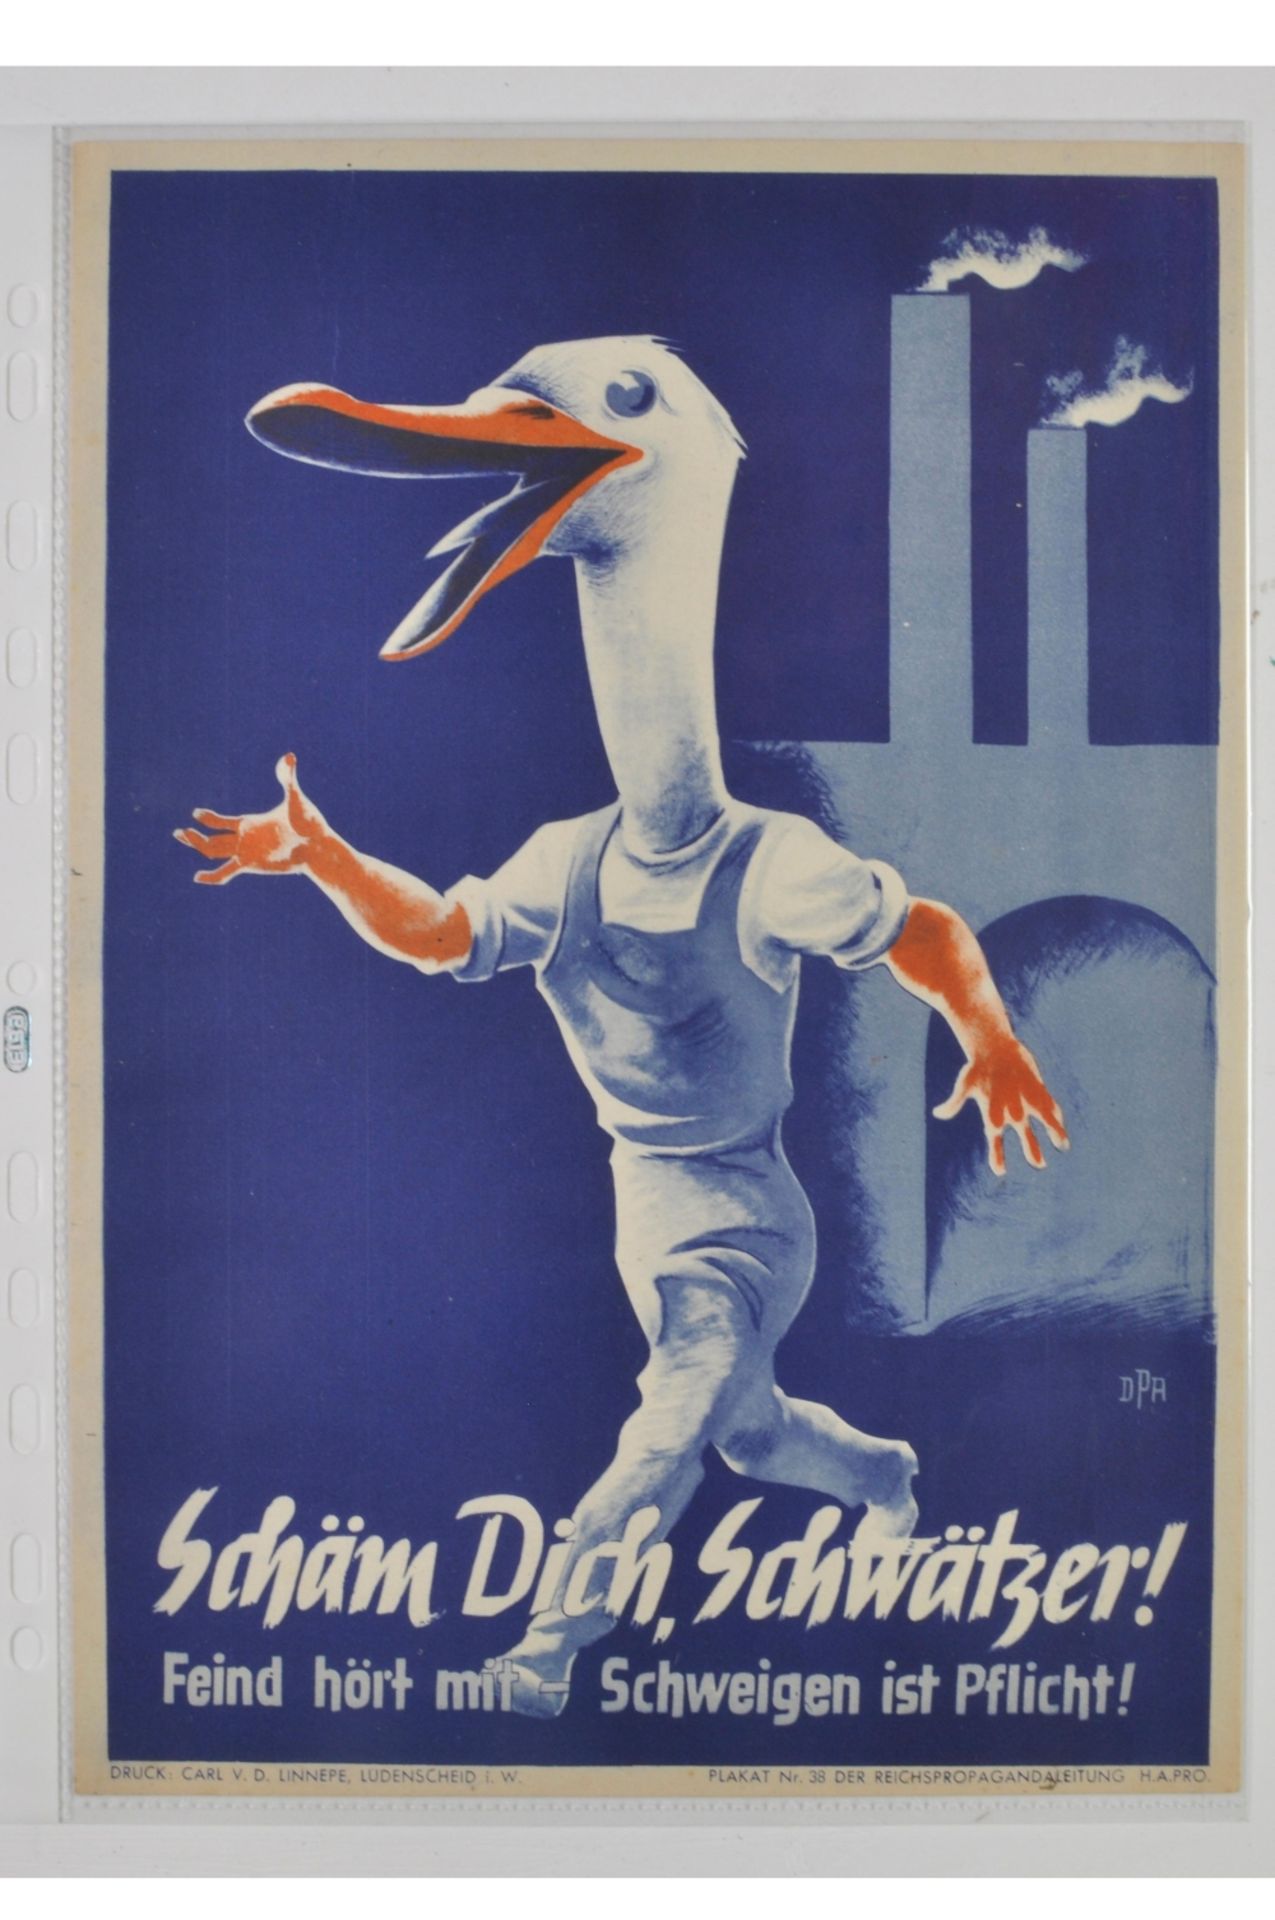 Farbiges Propaganda Plakat \Schäm Dich, Schwätzer! Feind hört mit - Schweigen ist Pflicht\, 1943, Dr